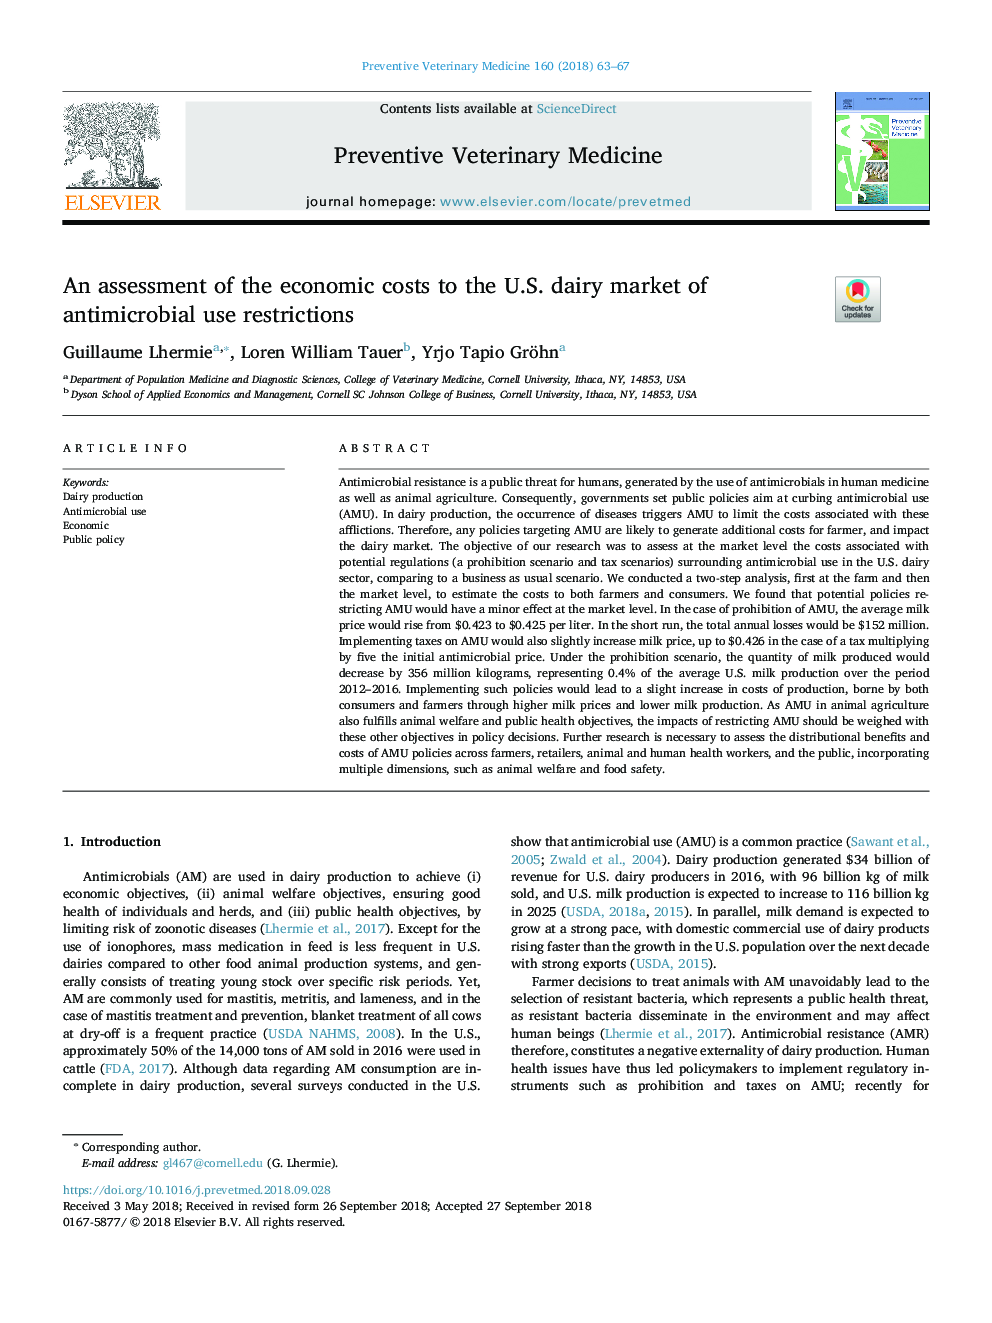 ارزیابی هزینه های اقتصادی در بازار لبنیات ایالات متحده از محدودیت های استفاده از ضد میکروبی